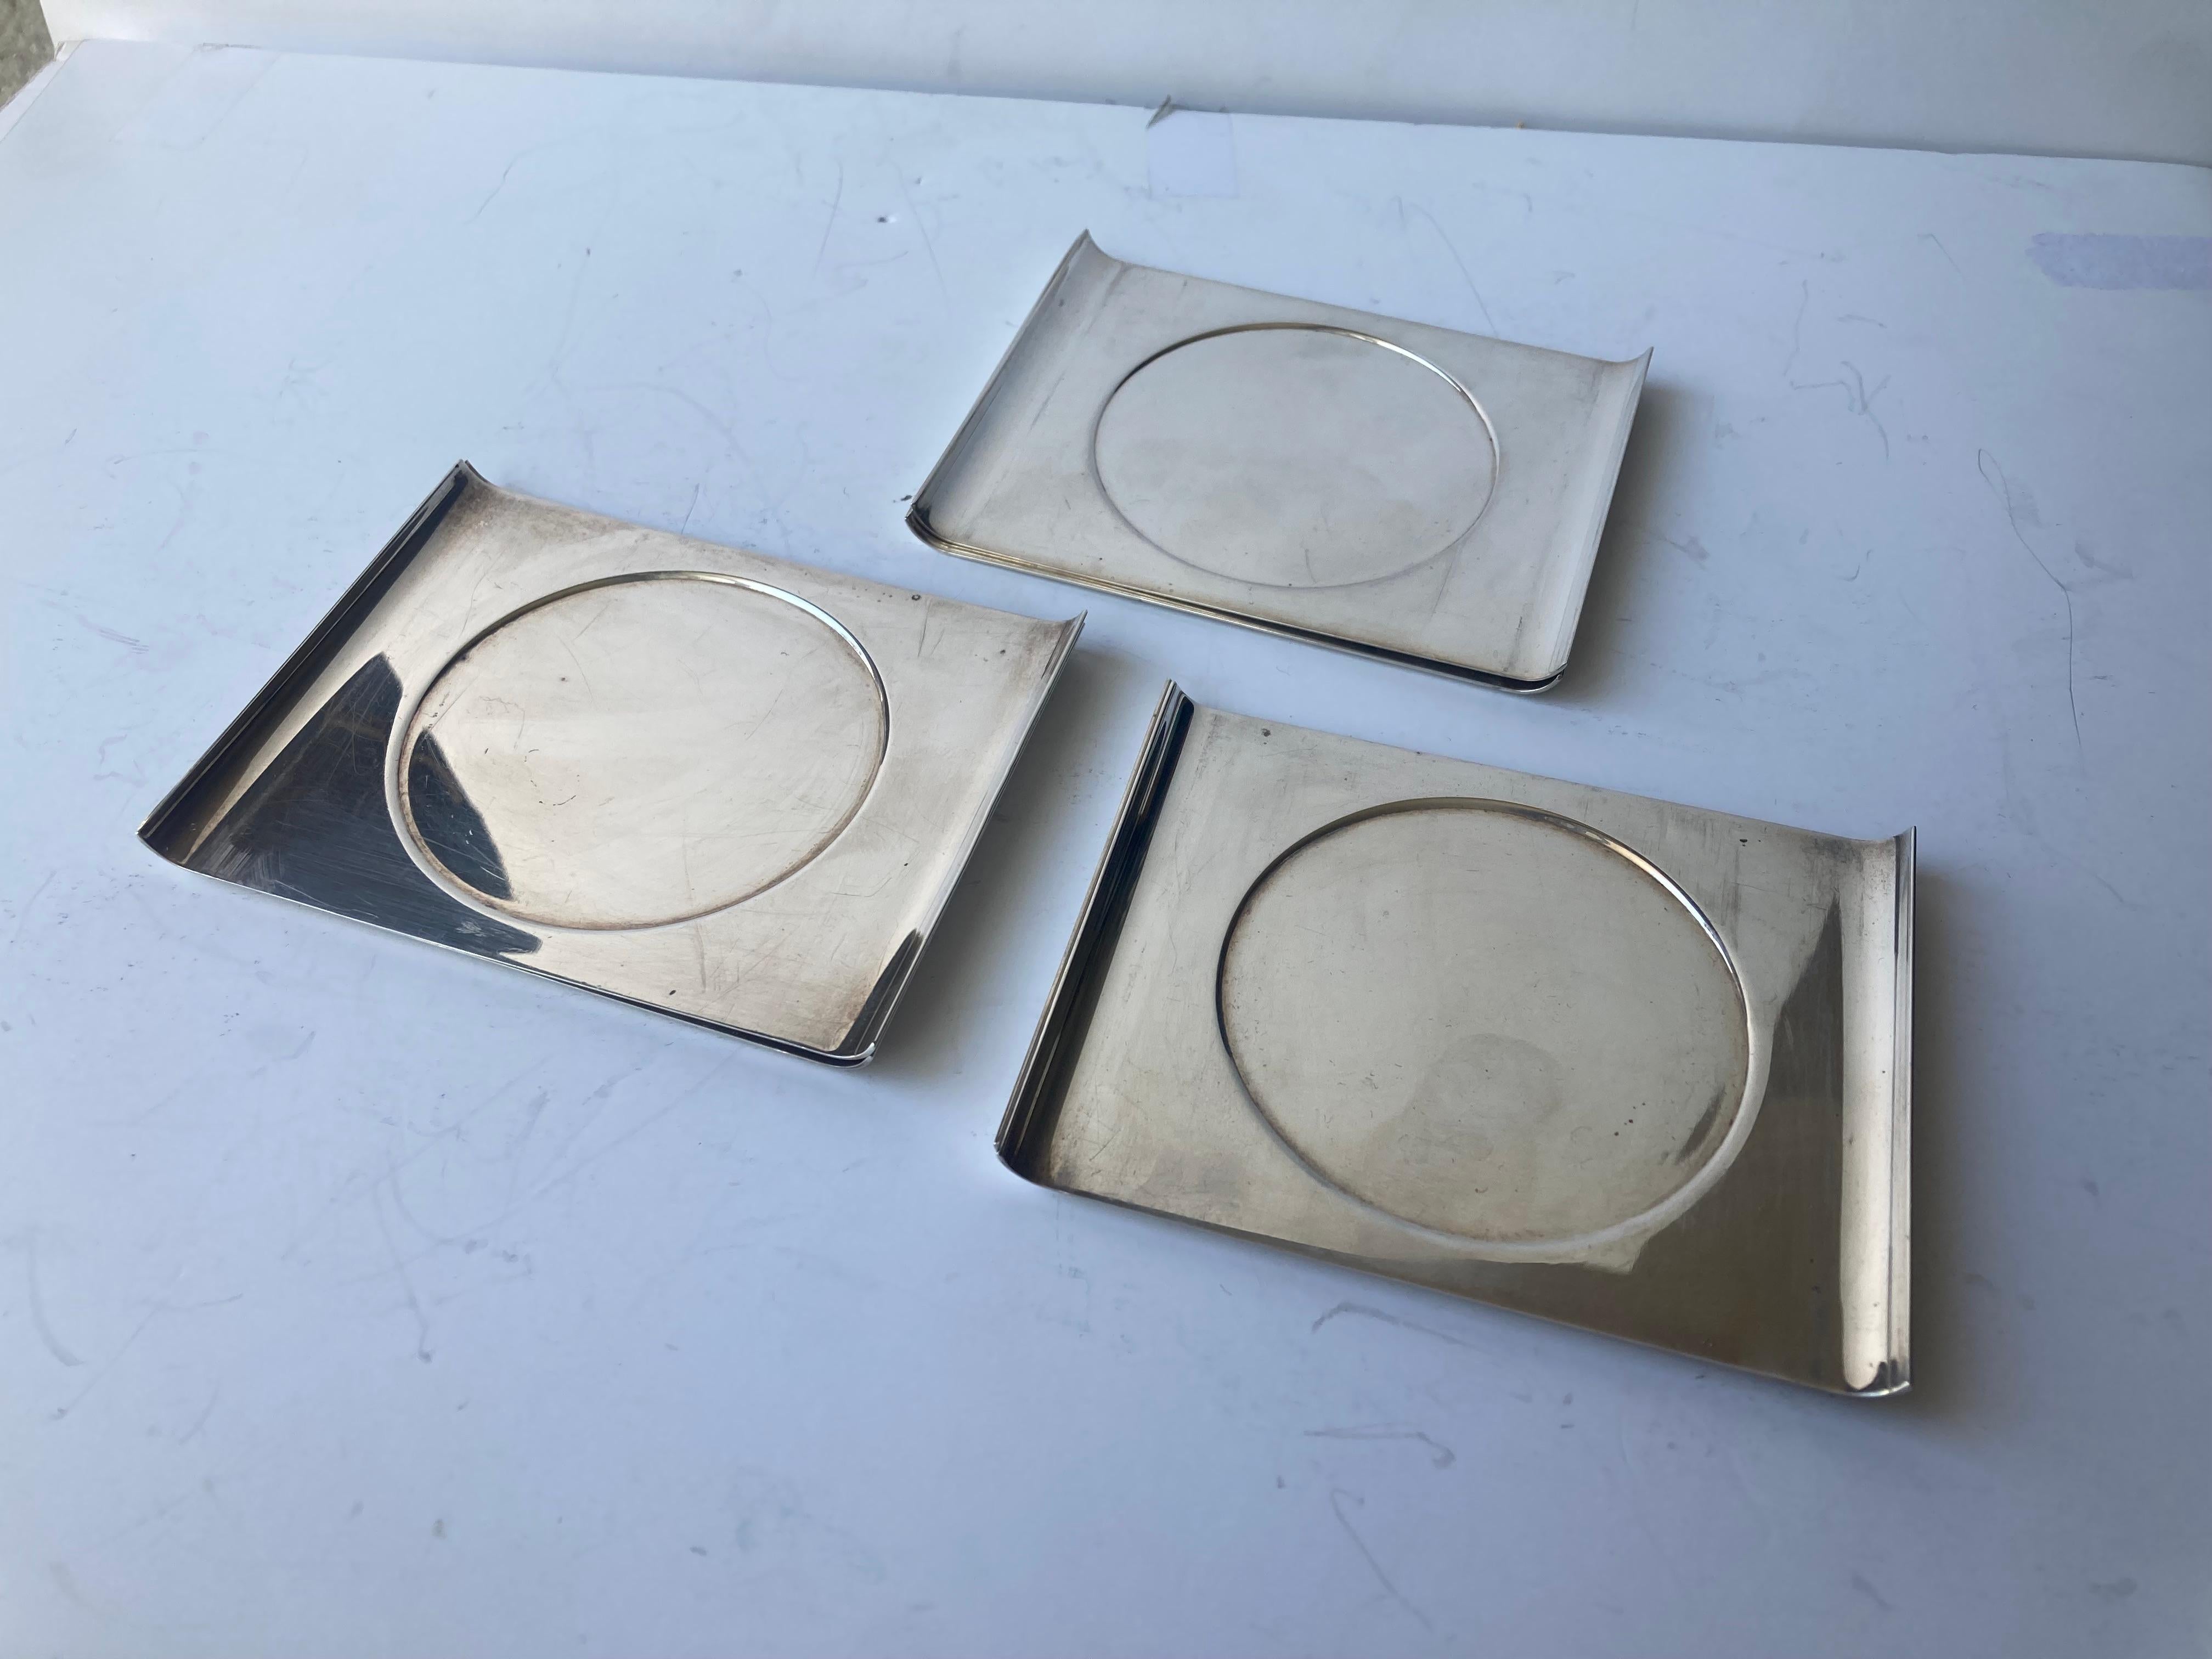 Jolie collection de six sous-verres Sabattini en acier inoxydable. Toutes les pièces sont marquées du poinçon standard Sabattini.